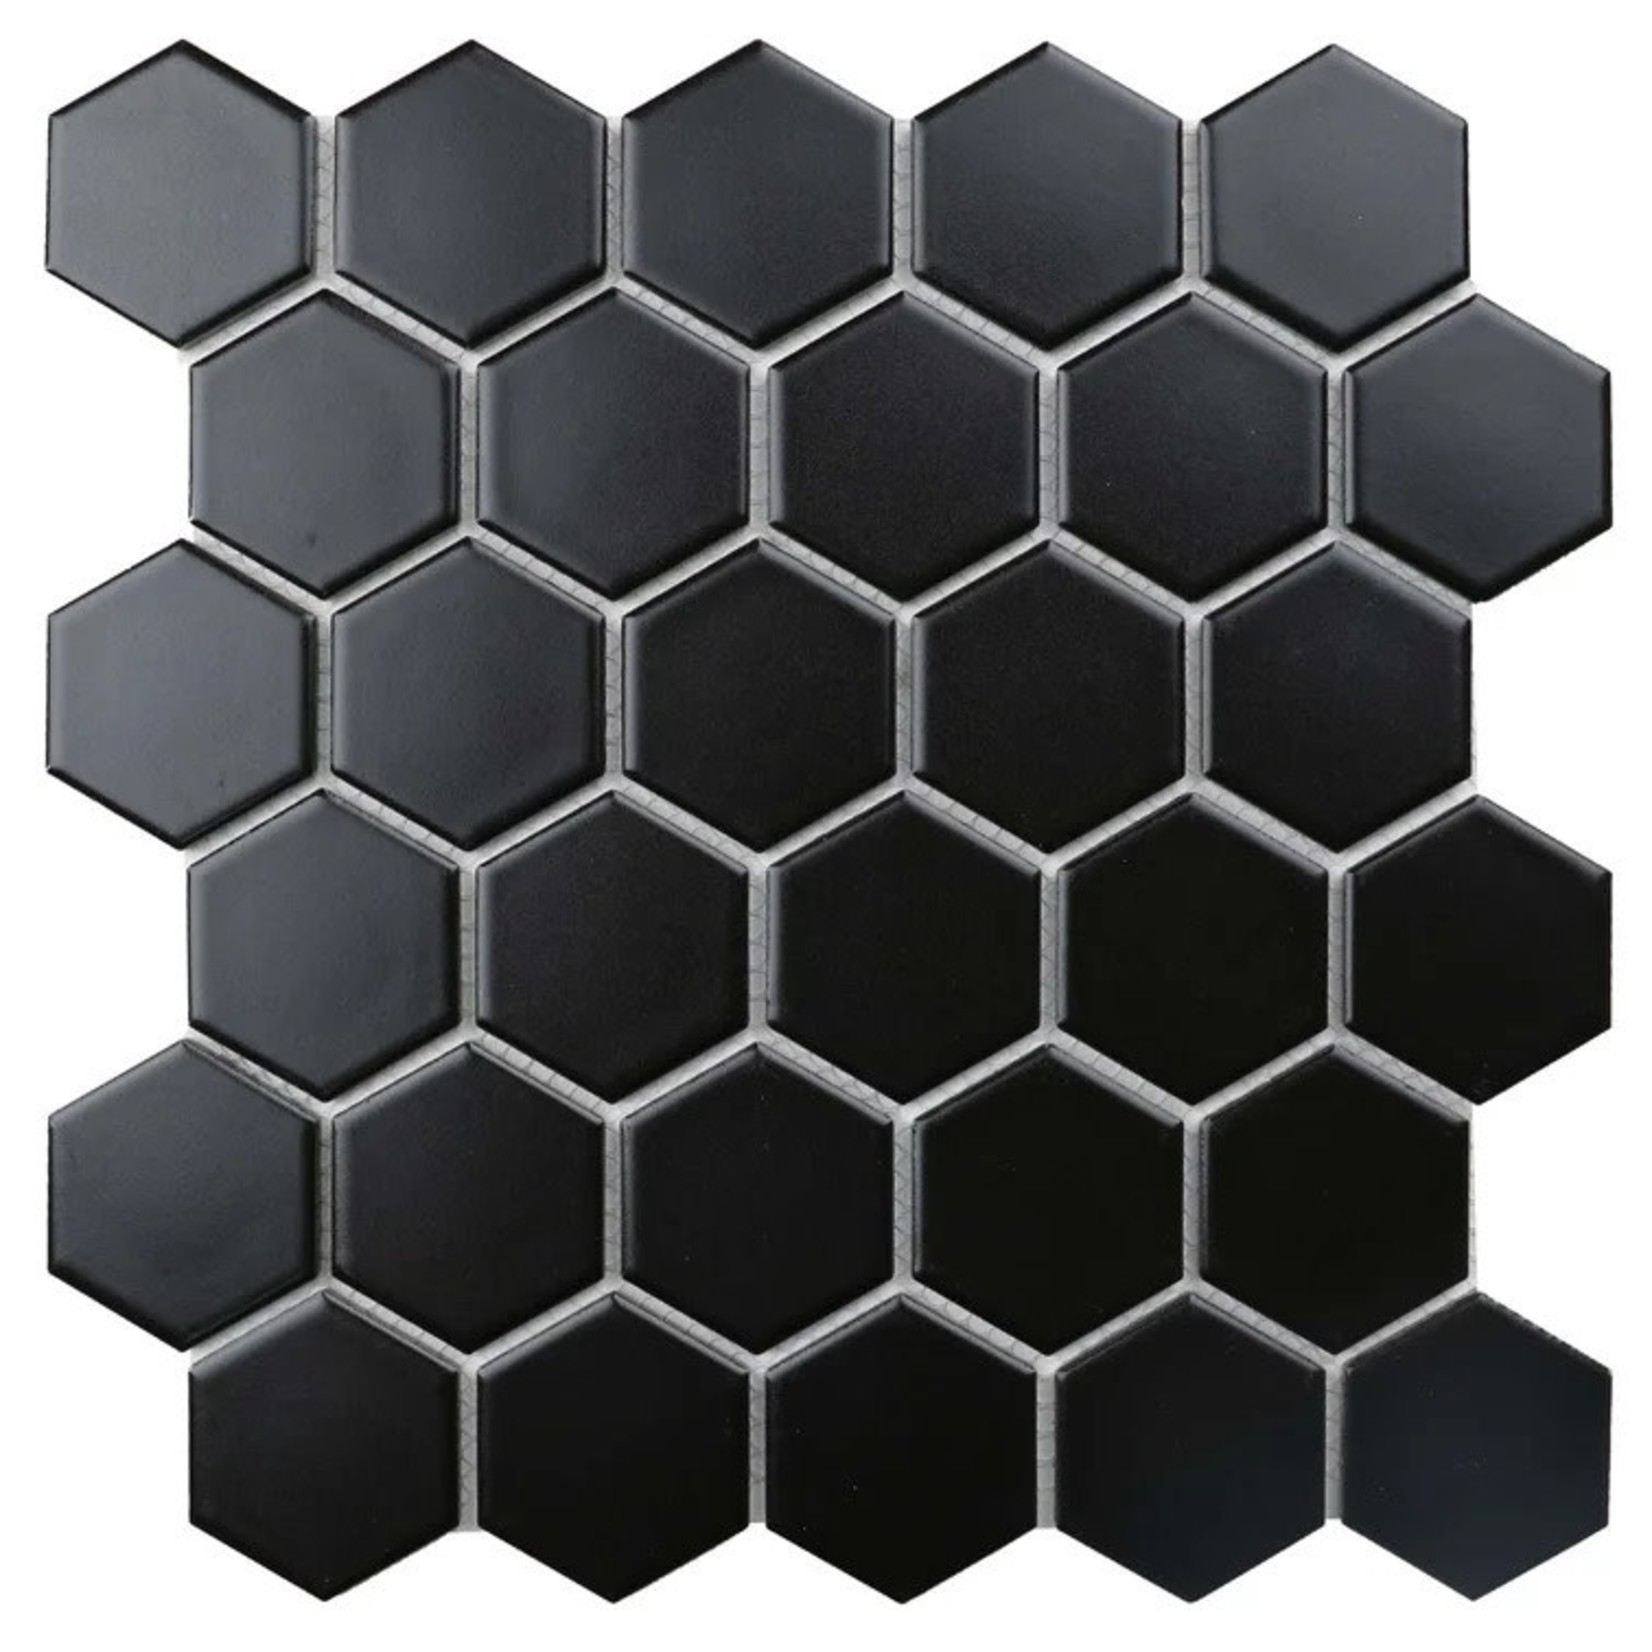 *Value Series 2" x 2" Porcelain Honeycomb Mosaic Tiles - Box - Final Sale